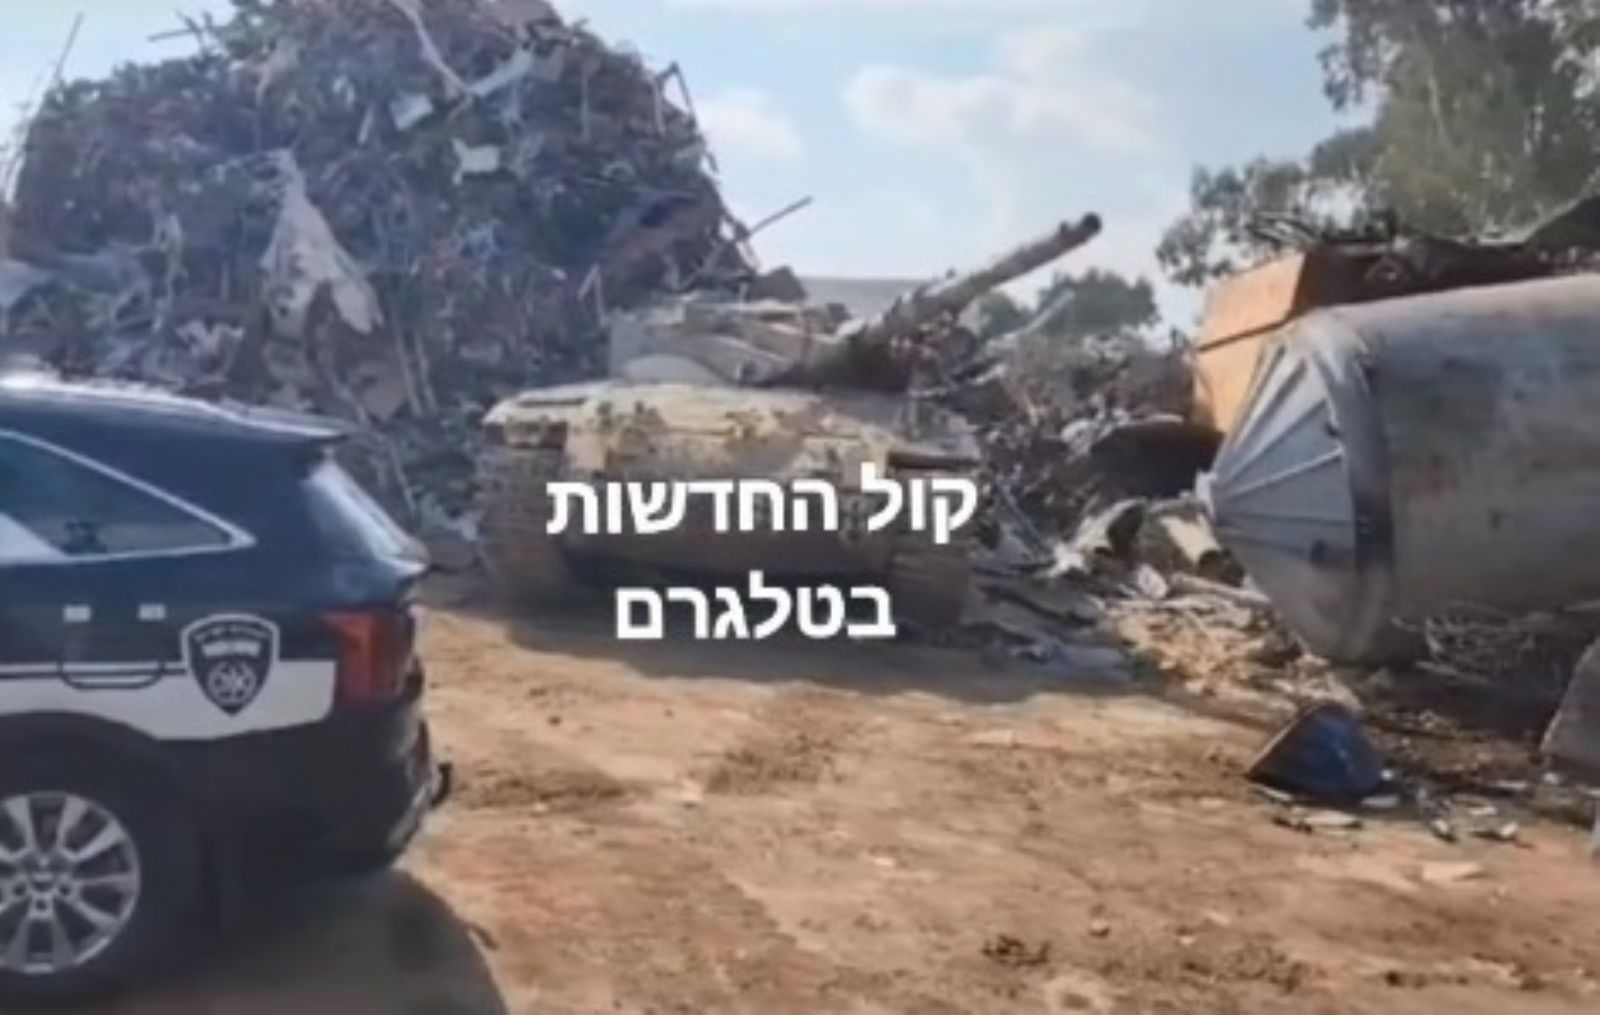 الشرطة الإسرائيلية تعثر على دبابة سرقت من قاعدة تدريب للجيش